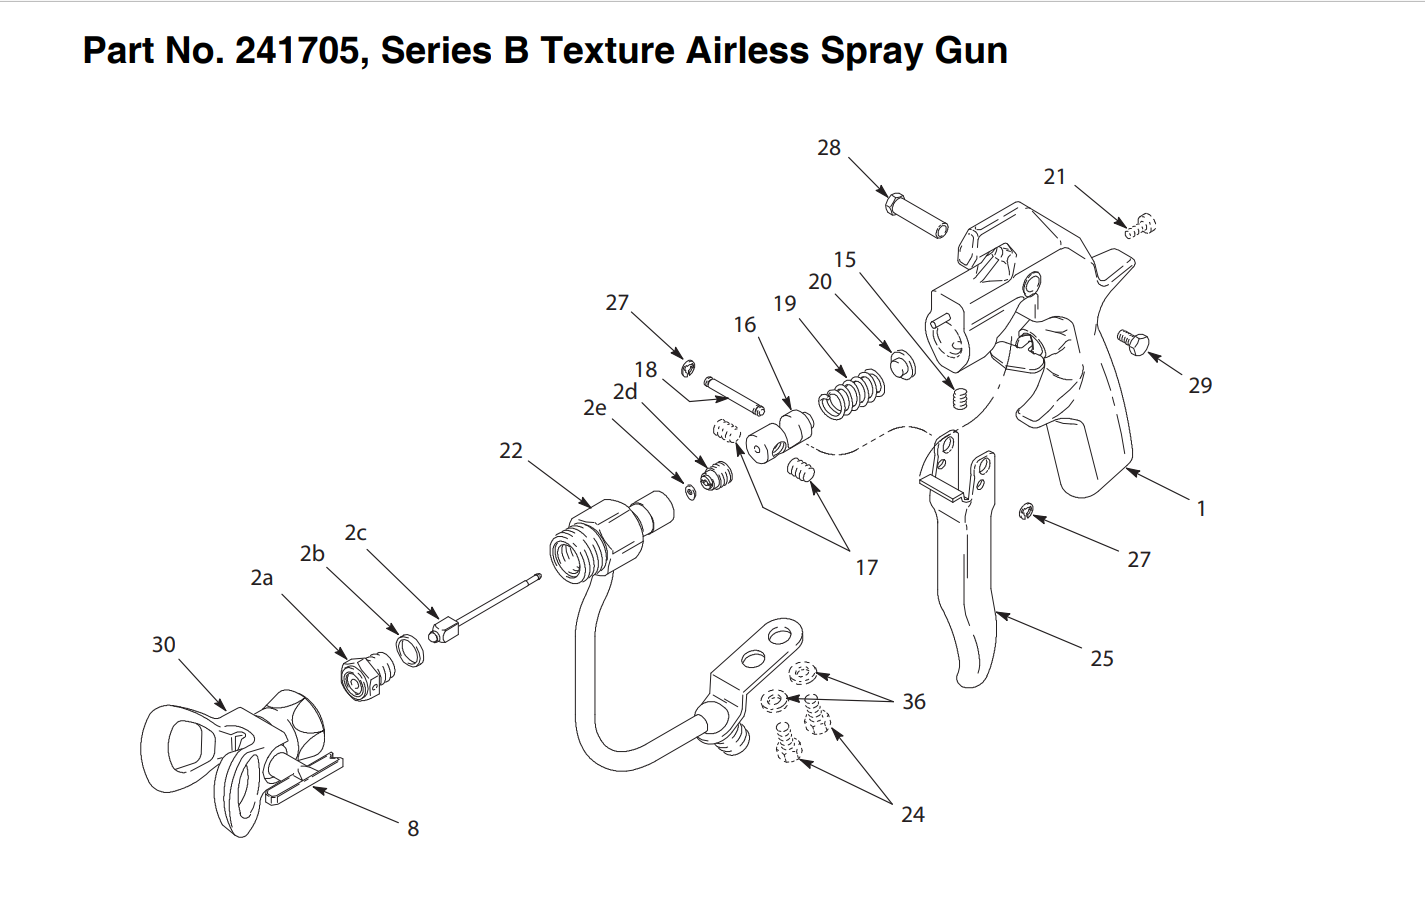 Graco Series B Texture Airless Spray Gun